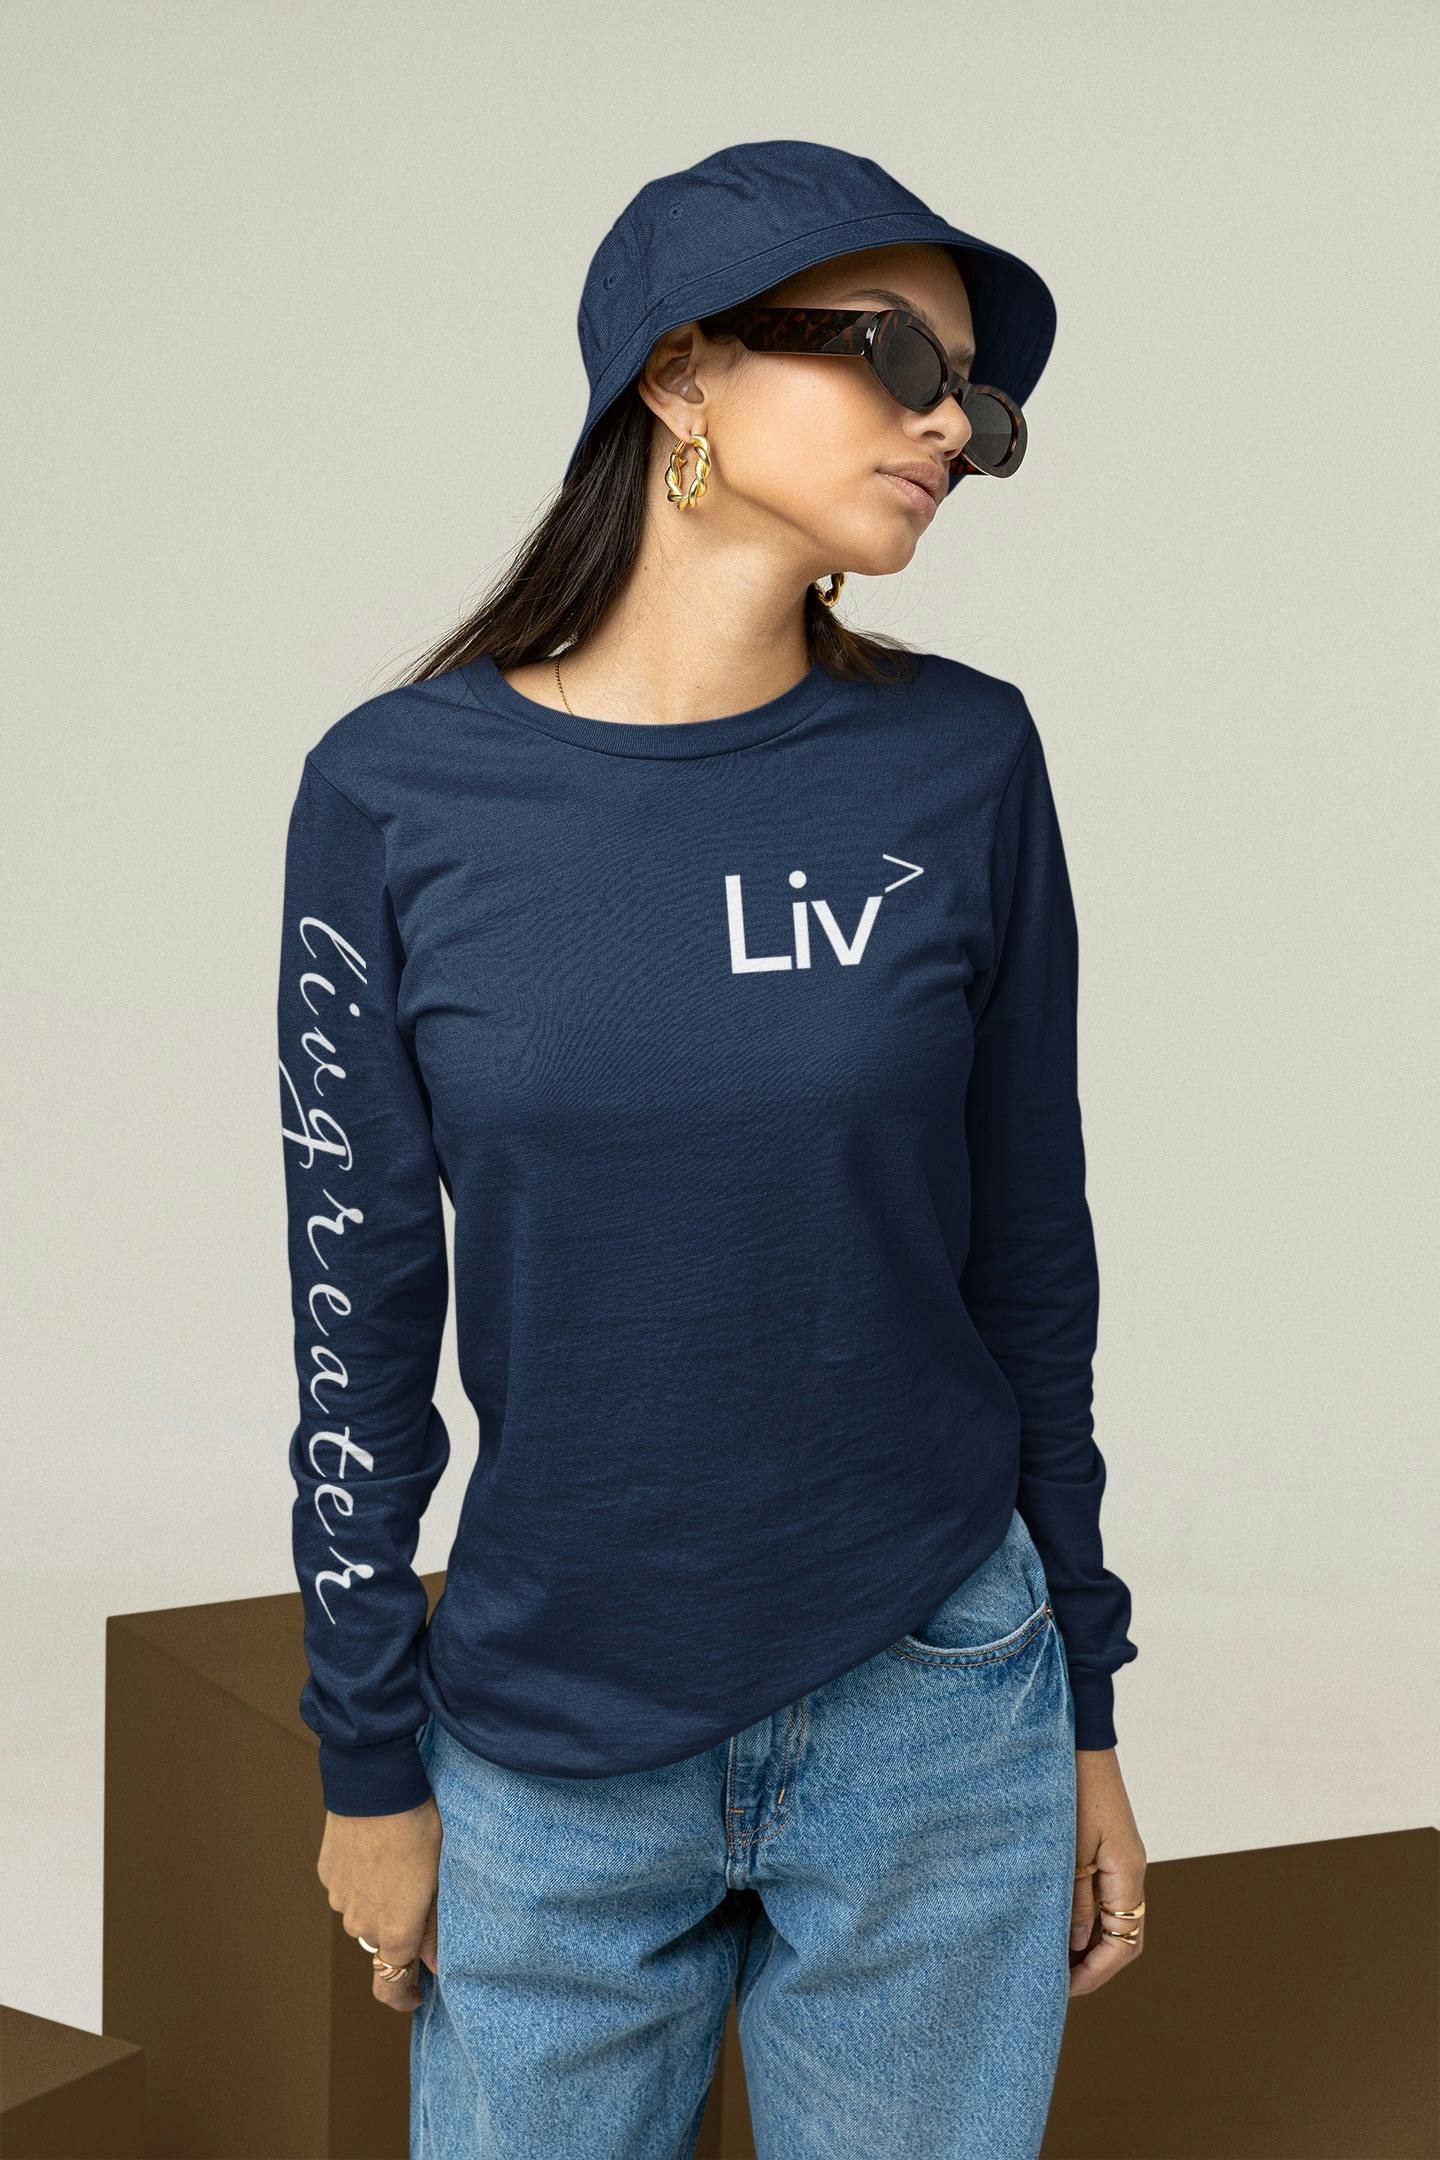 LivGreater Long Sleeve Shirt Navy Medium